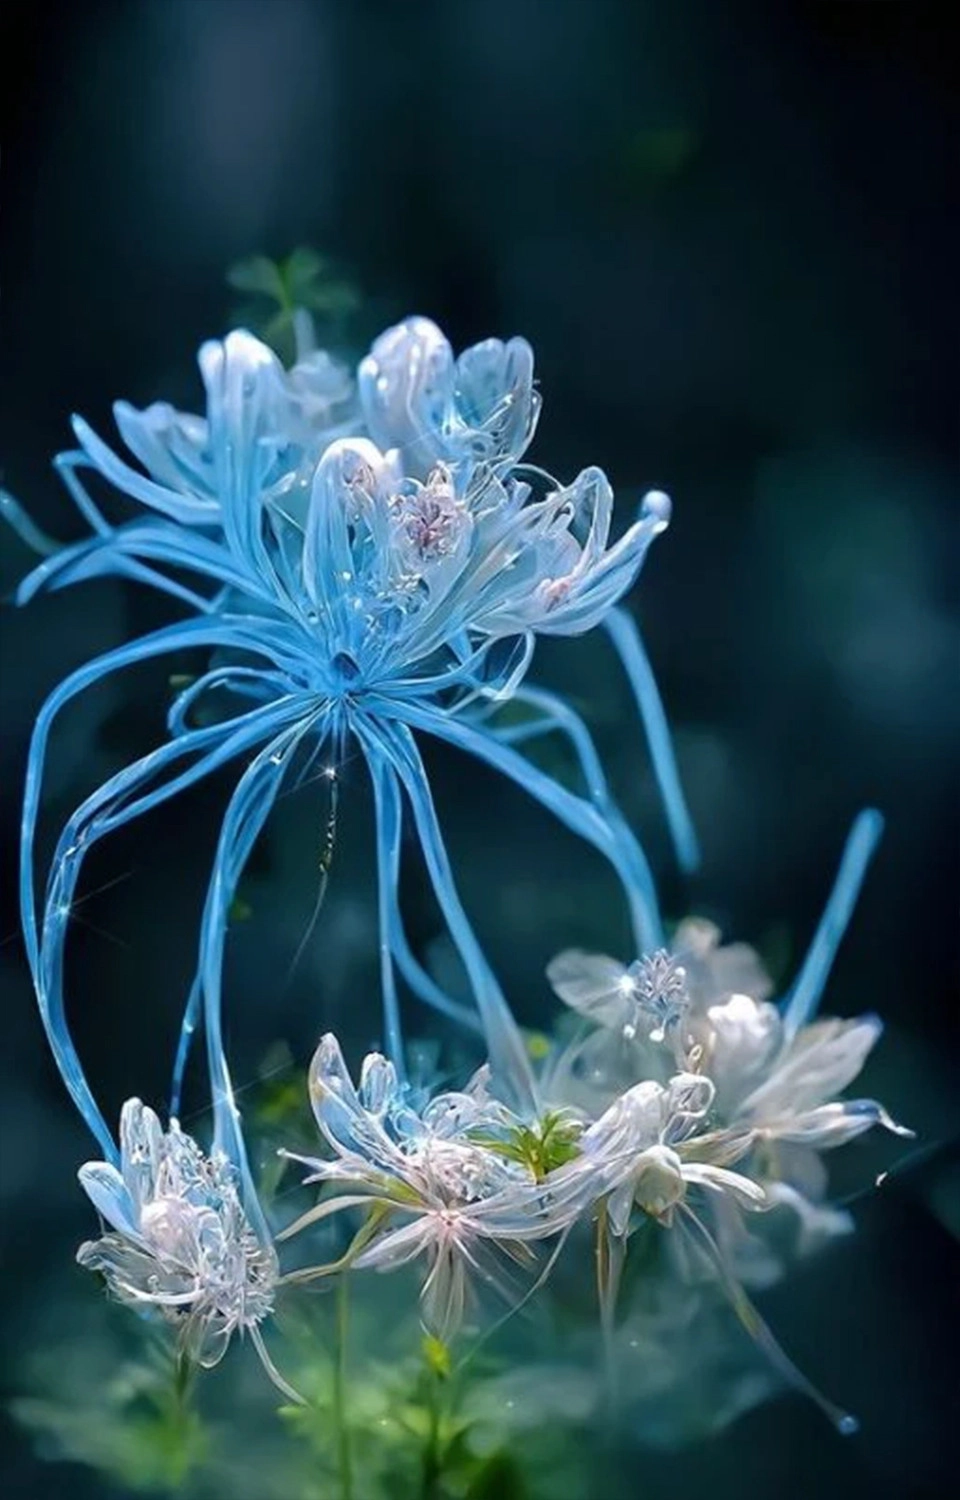  Ảnh nền hoa bỉ ngạn xanh 3D ảo diệu